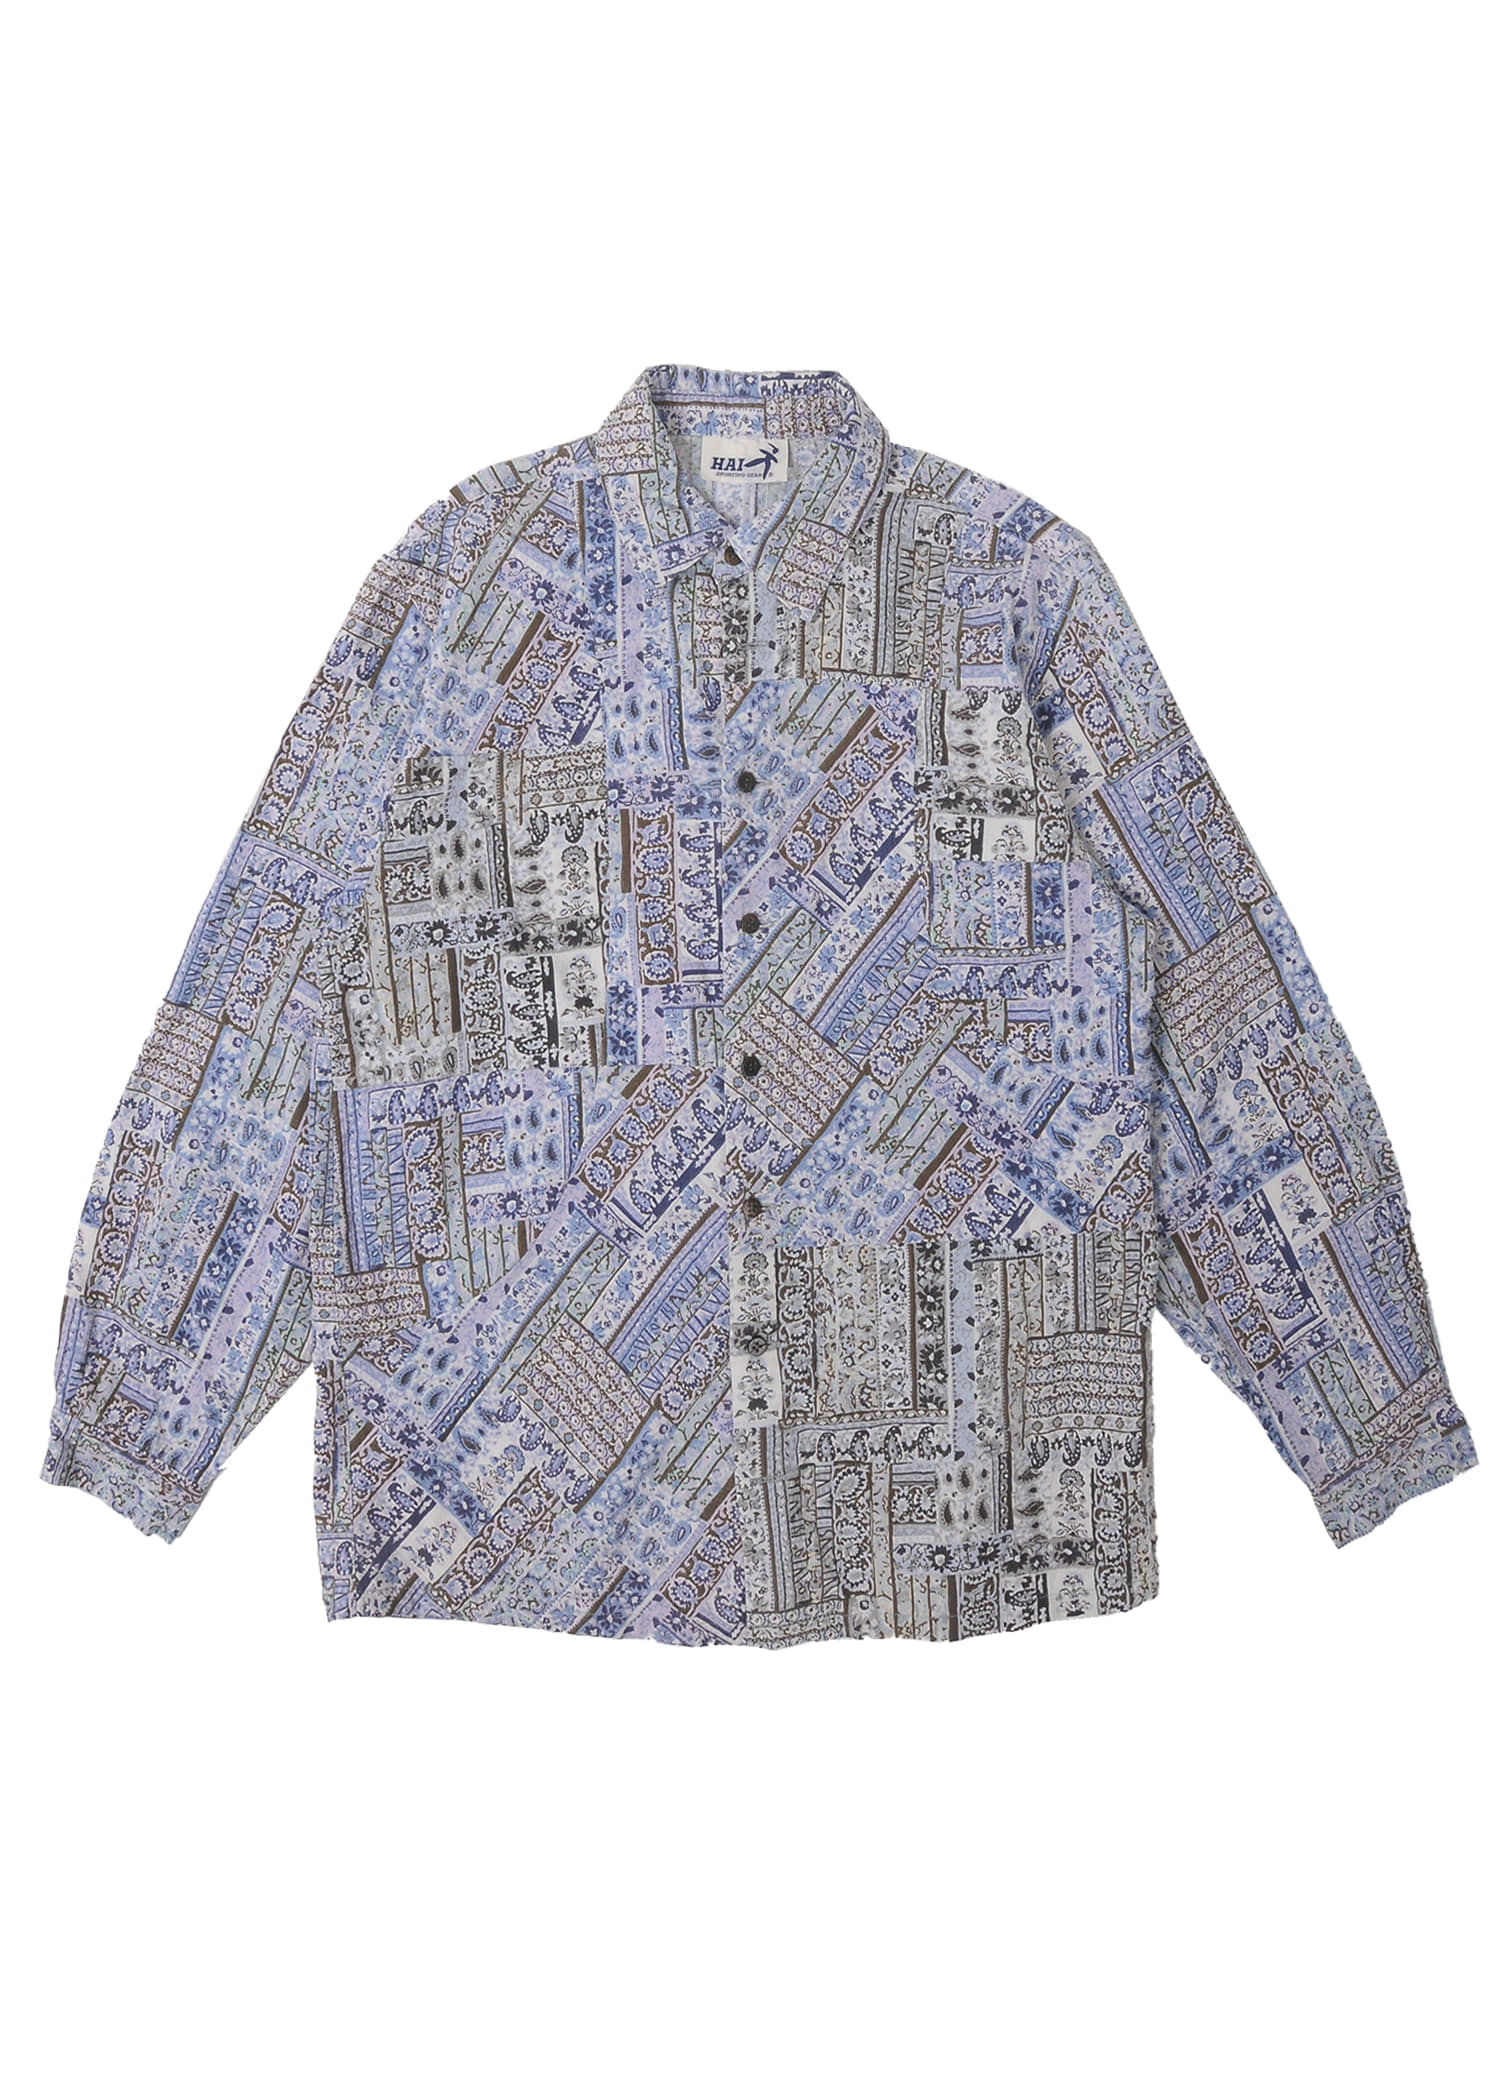 HAI SPORTING GEAR by ISSEY MIYAKE paisley shirts